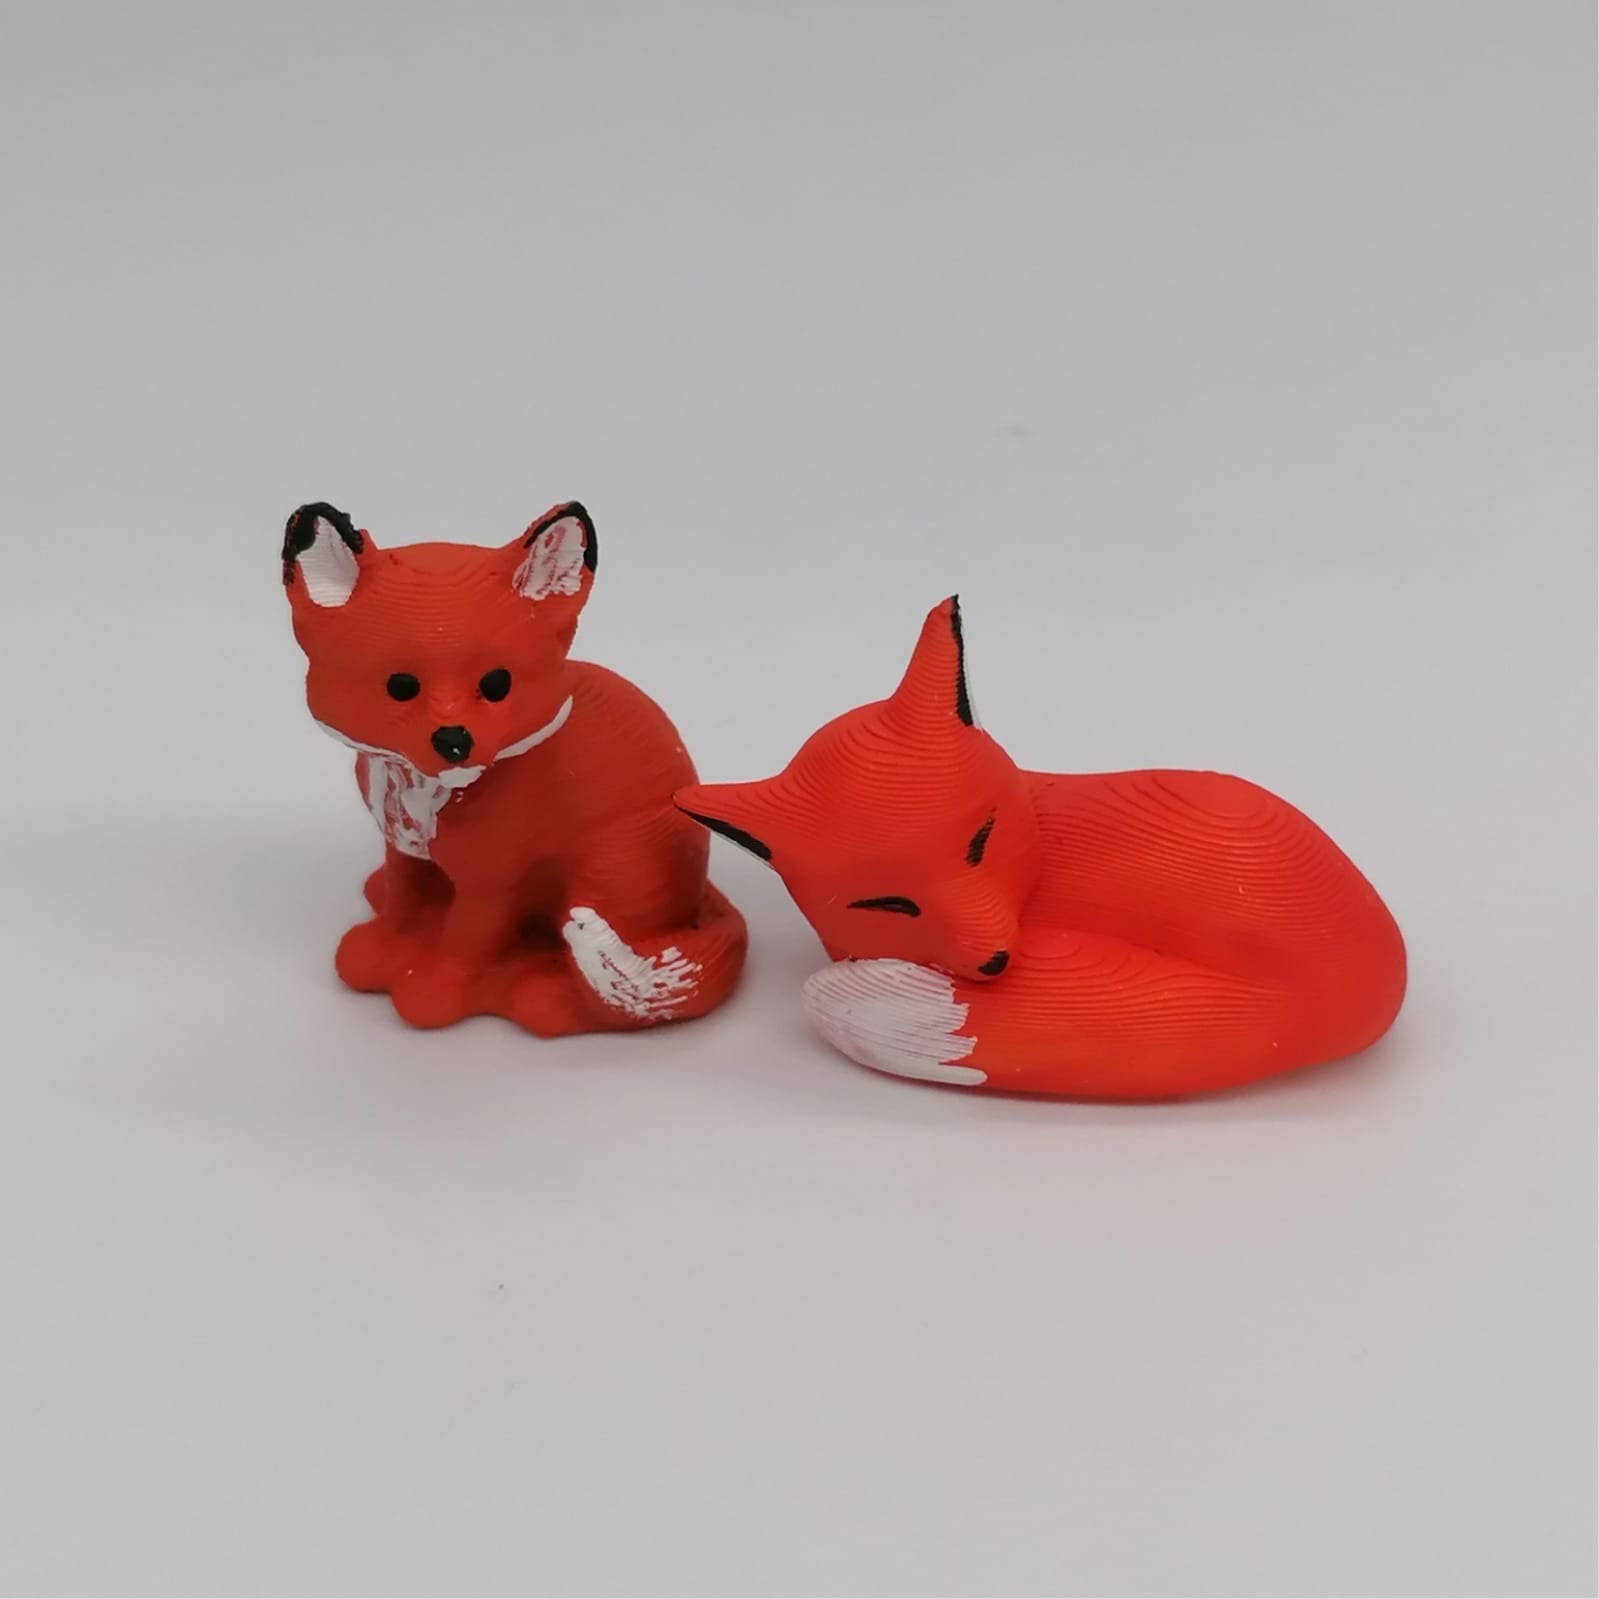 Tiere des Waldes Miniaturen im Maßstab 1:12 - Füchse - Miniaturen